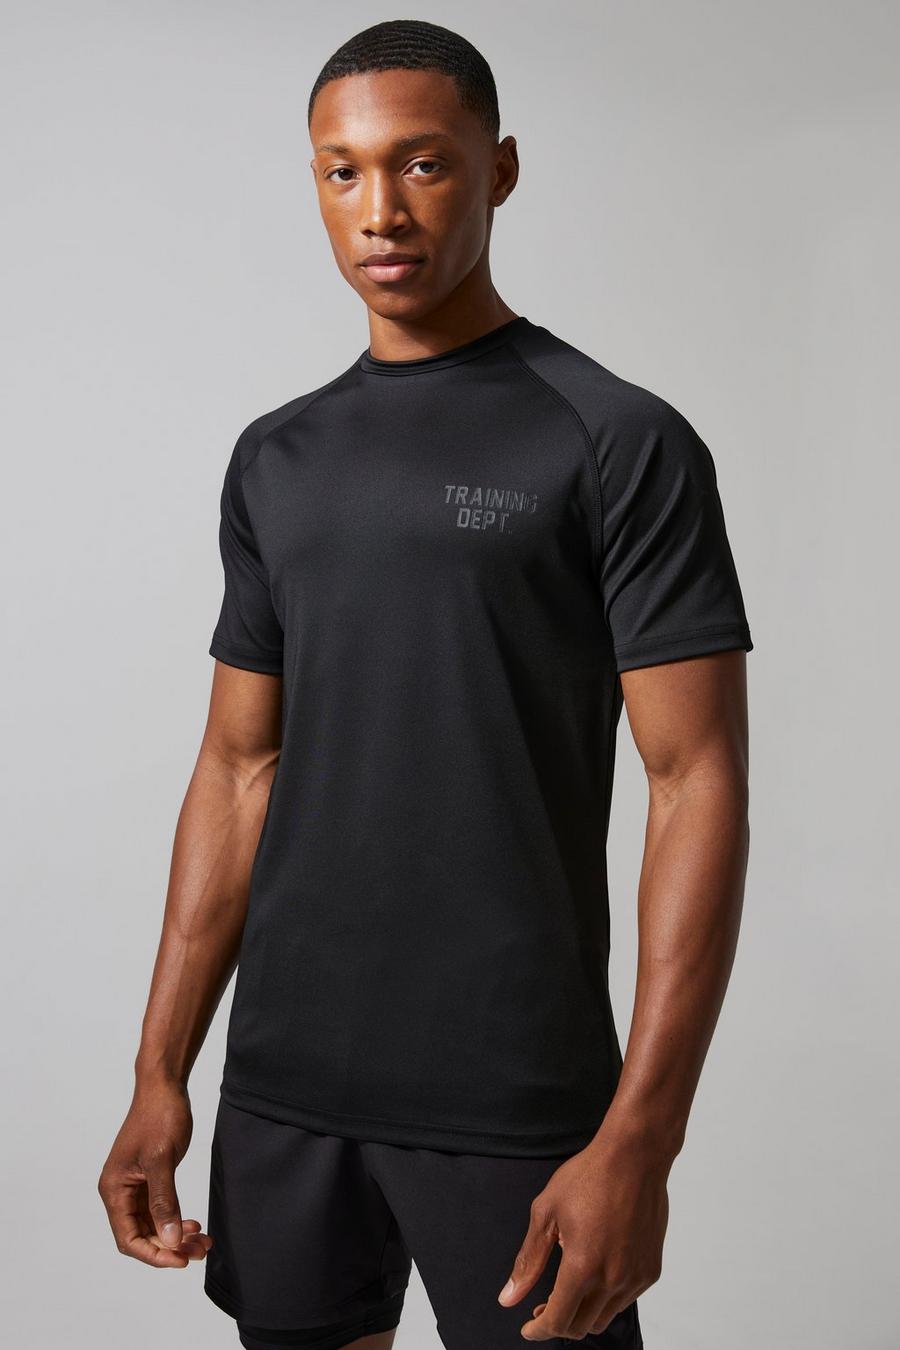 T-shirt attillata Man Active Training Dept, Black